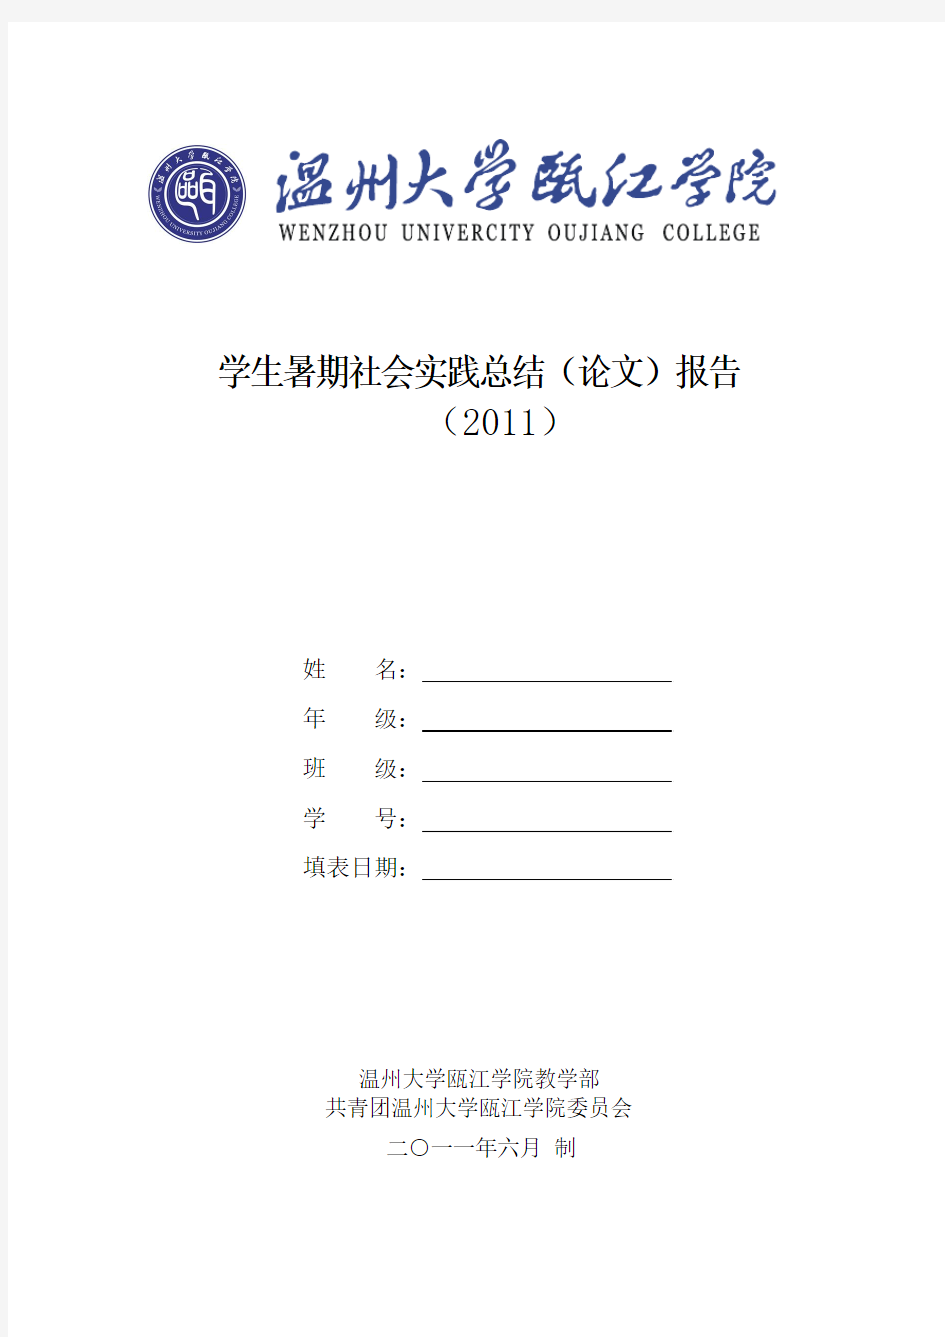 温州大学瓯江学院暑期社会实践总结报告表